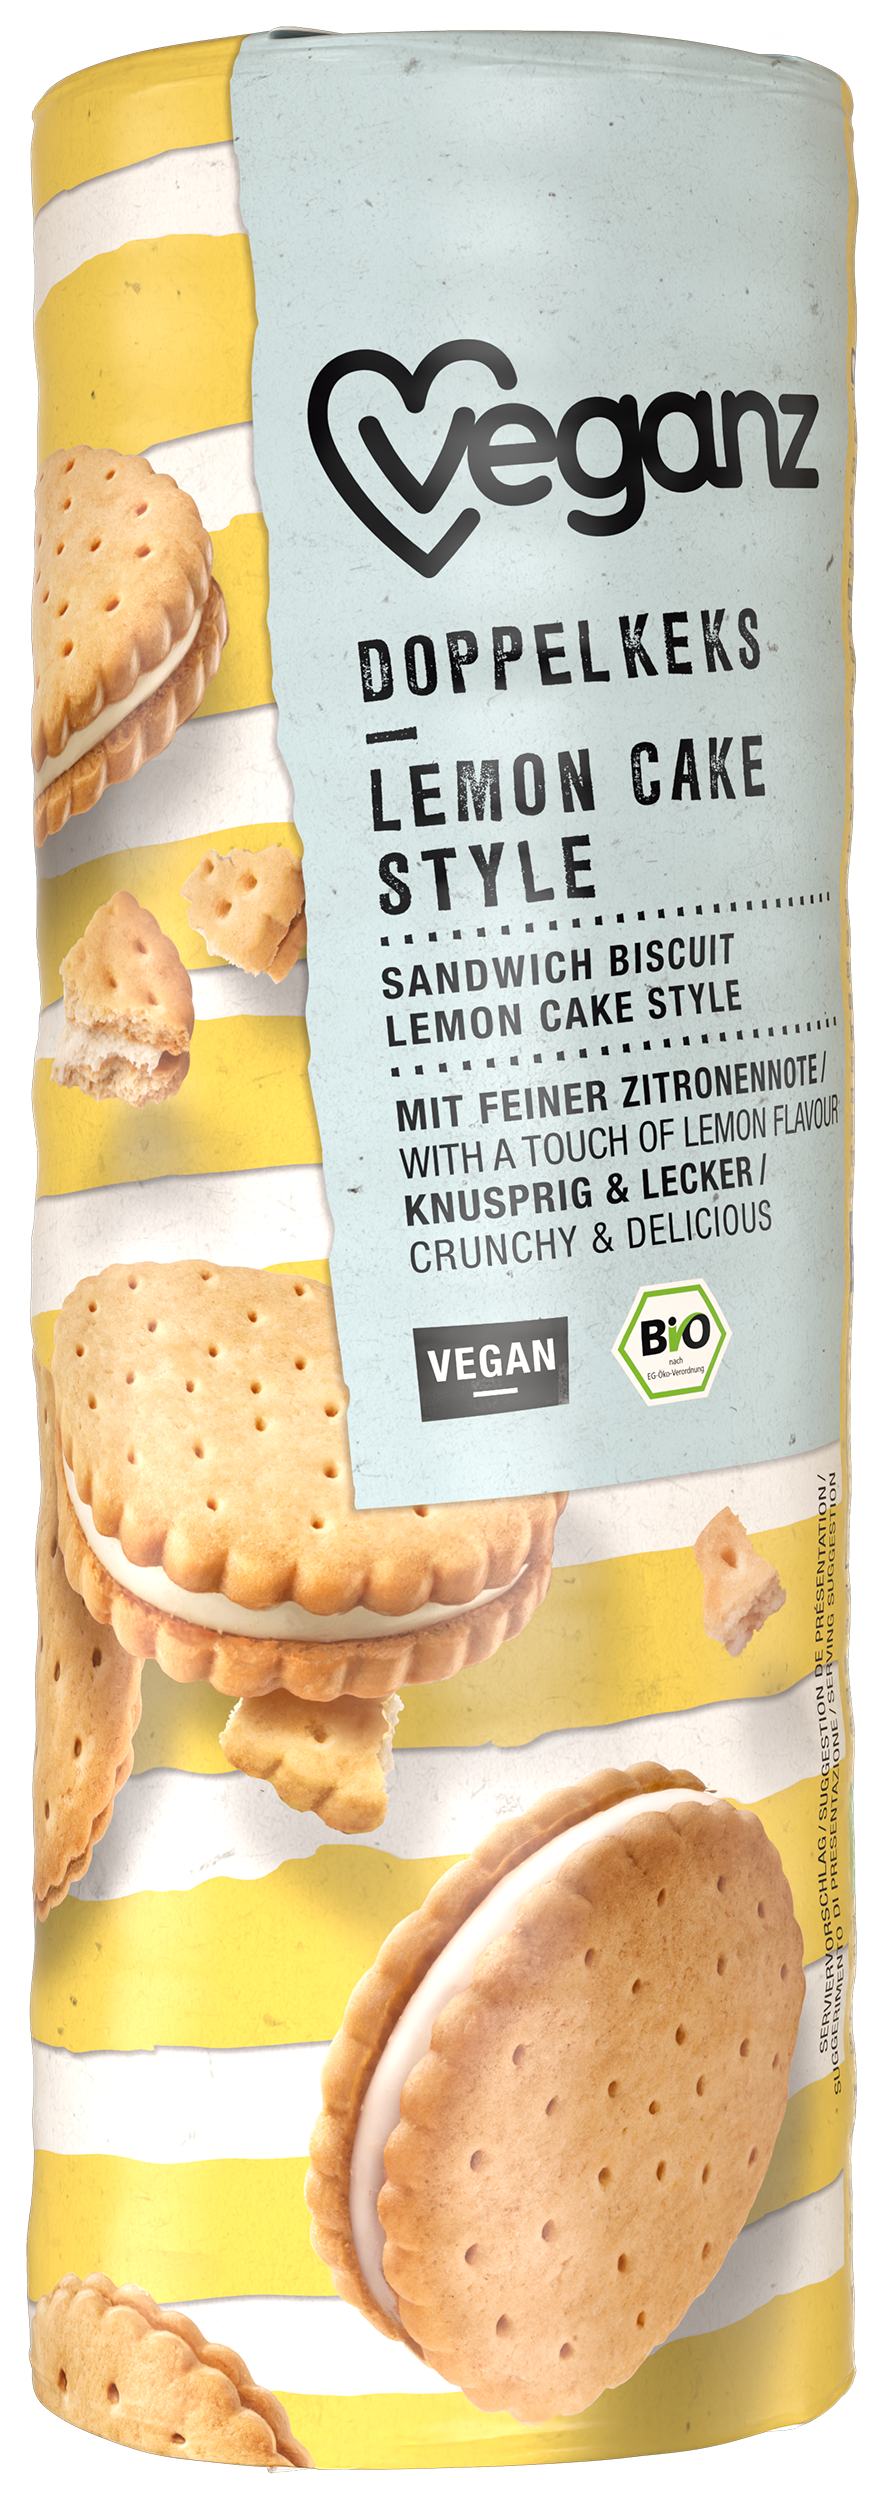 Bio Veganz Doppelkeks Lemon Cake Style 330g